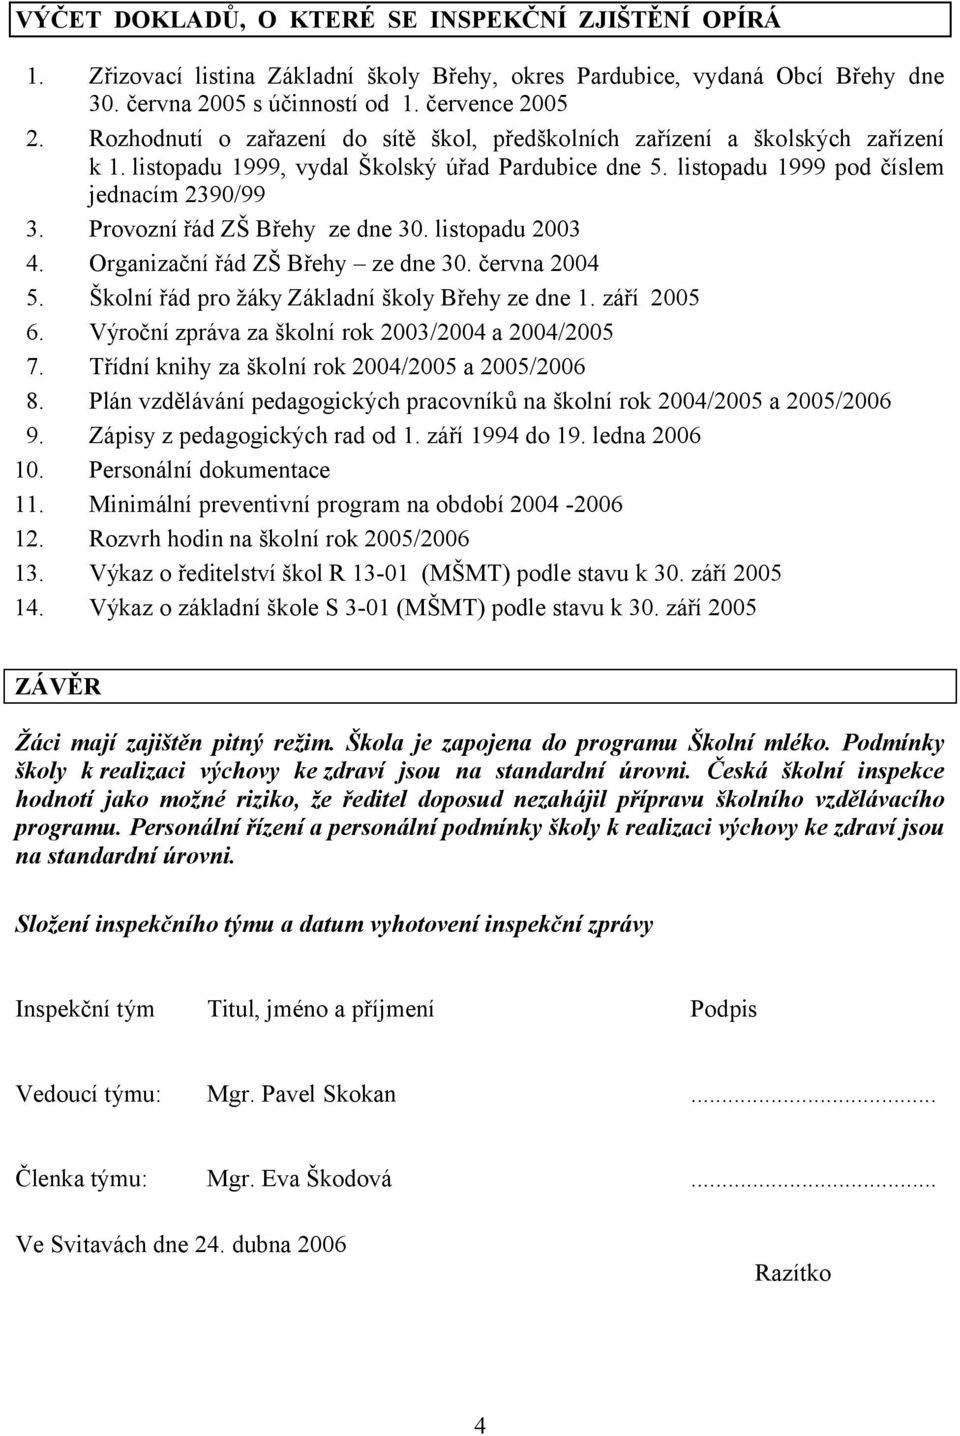 Provozní řád ZŠ Břehy ze dne 30. listopadu 2003 4. Organizační řád ZŠ Břehy ze dne 30. června 2004 5. Školní řád pro žáky Základní školy Břehy ze dne 1. září 2005 6.